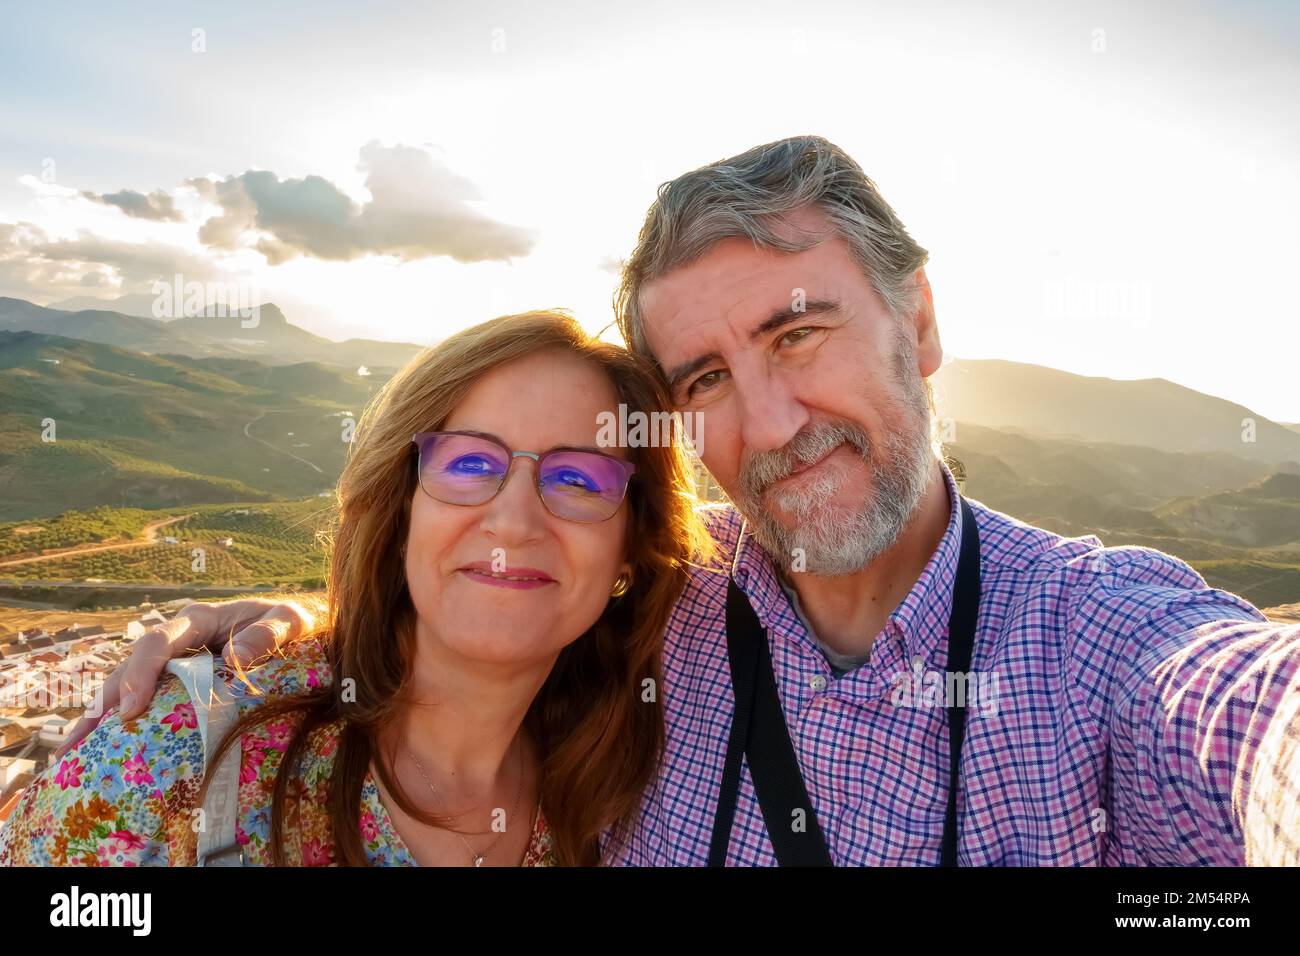 Ein Paar erwachsener Mann und Frau, die ein Selfie auf einer Touristenreise machen, im Vorruhestand. Stockfoto